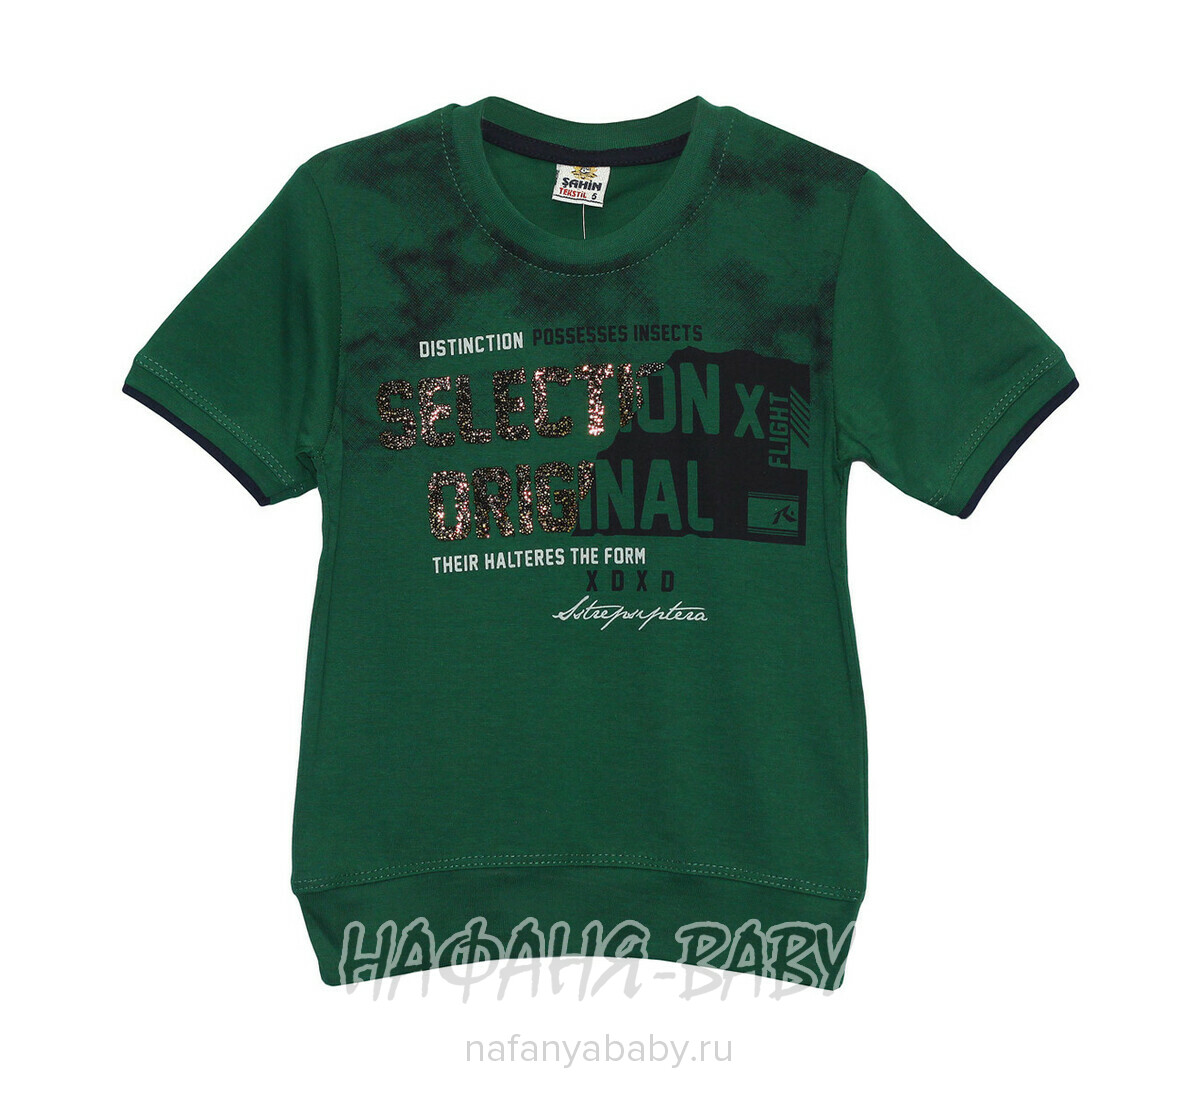 Подростковая футболка SAHIN, купить в интернет магазине Нафаня. арт: 301.